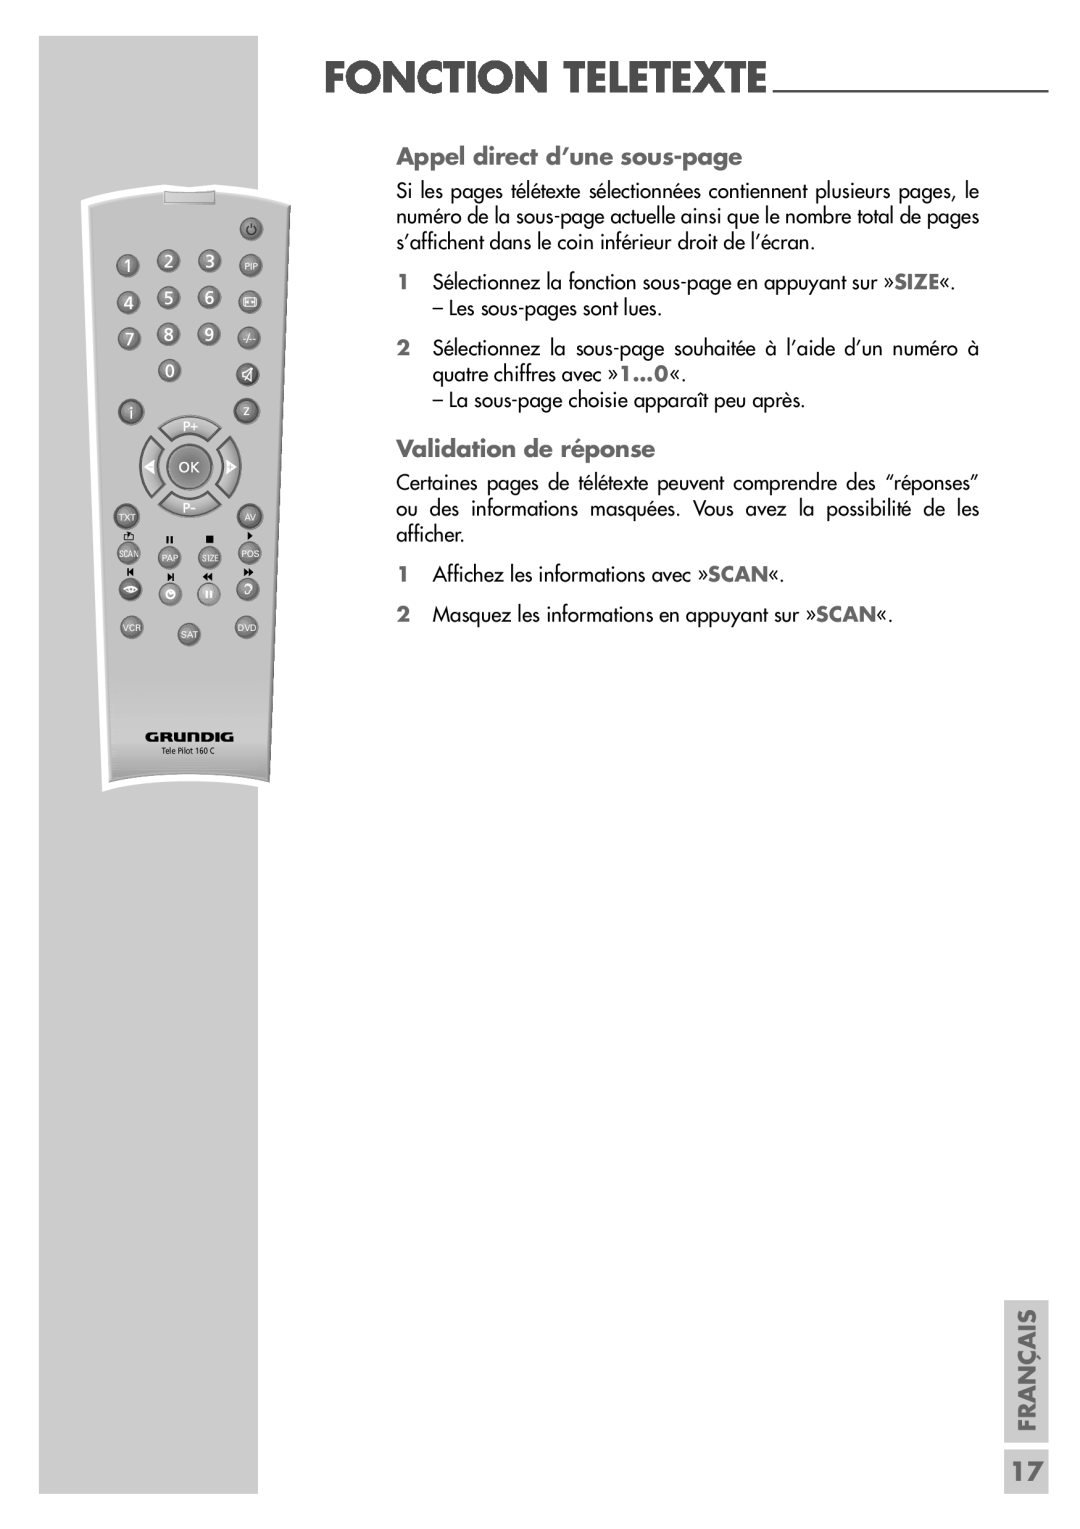 Grundig LW49-7710BS manual Appel direct d’une sous-page, Validation de réponse, Fonction Teletexte, Français 